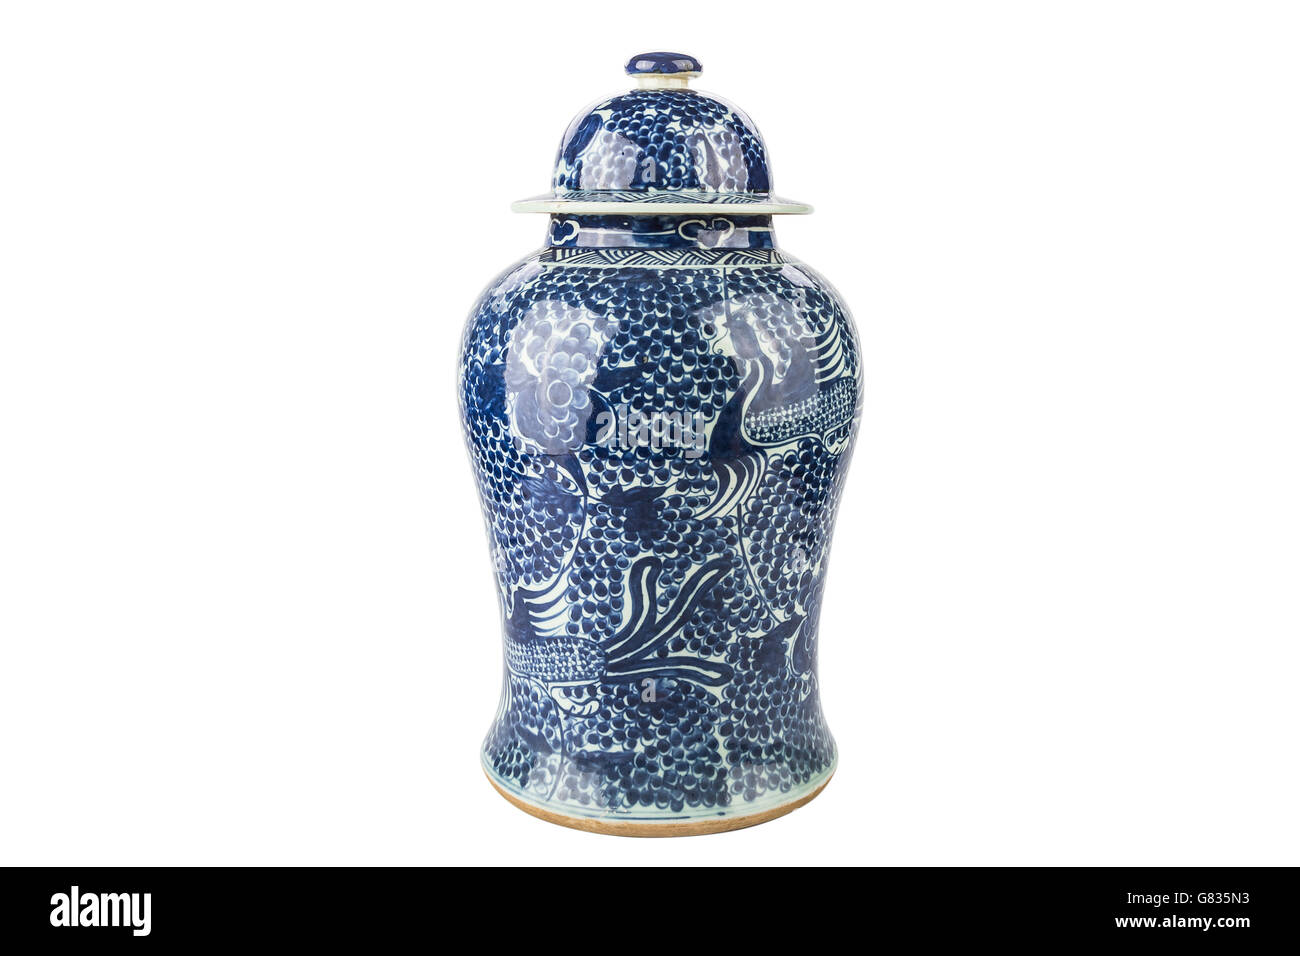 Traditionnelle Chinoise Antique vase sur un fond blanc Banque D'Images